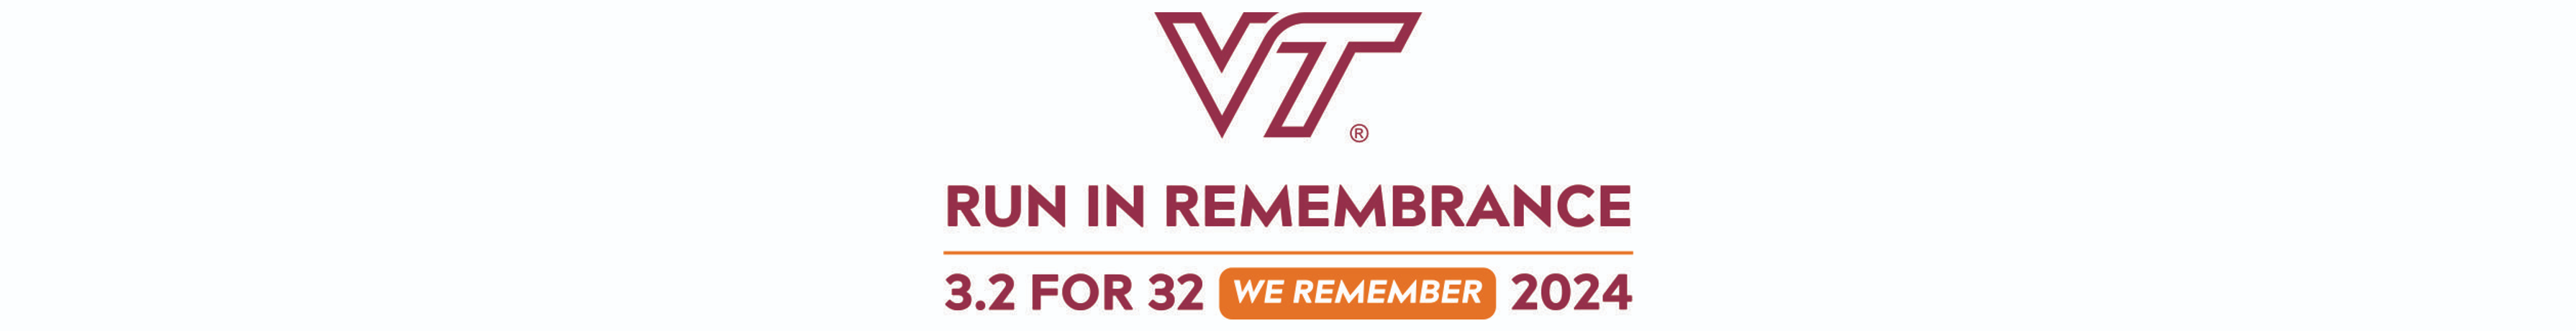 Virginia Tech Remembrance Run